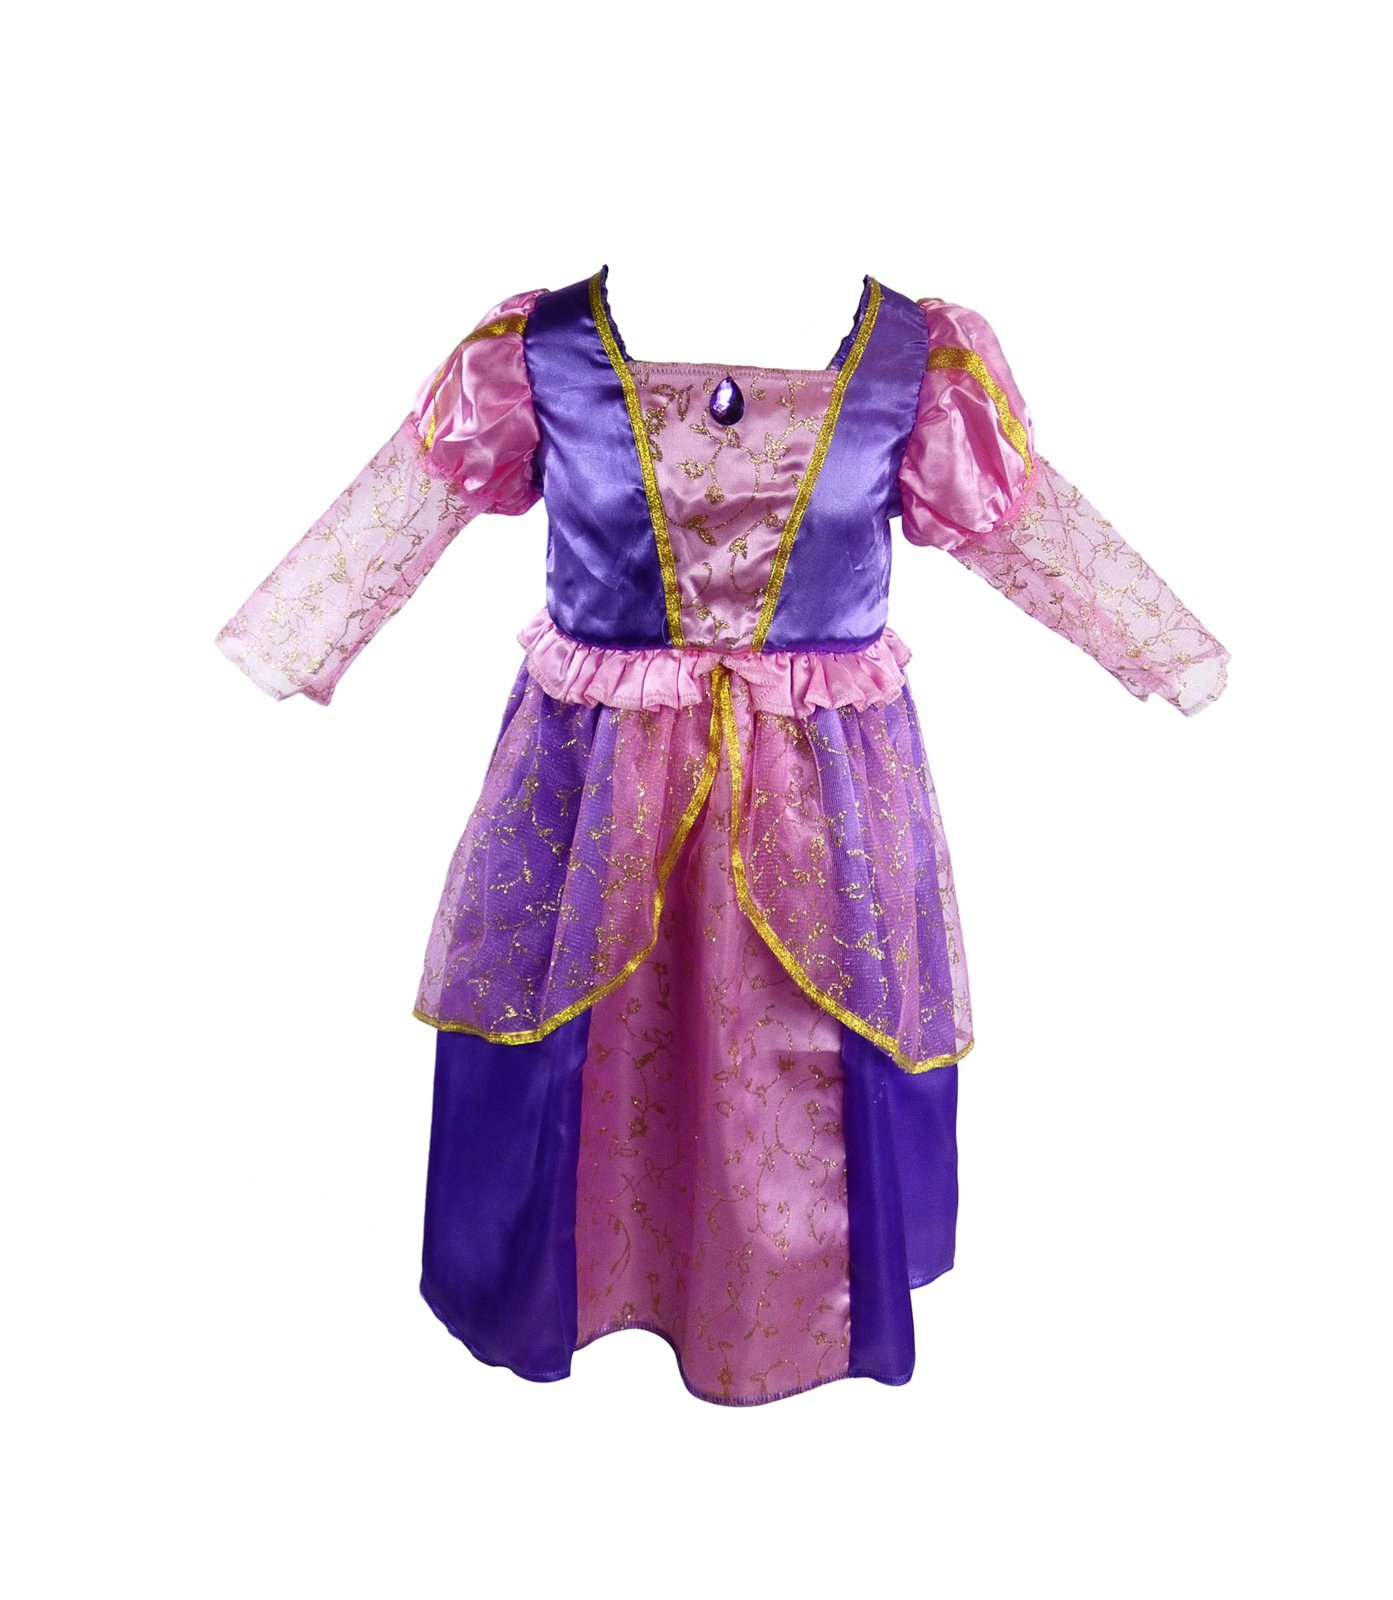 roupa de princesa rapunzel